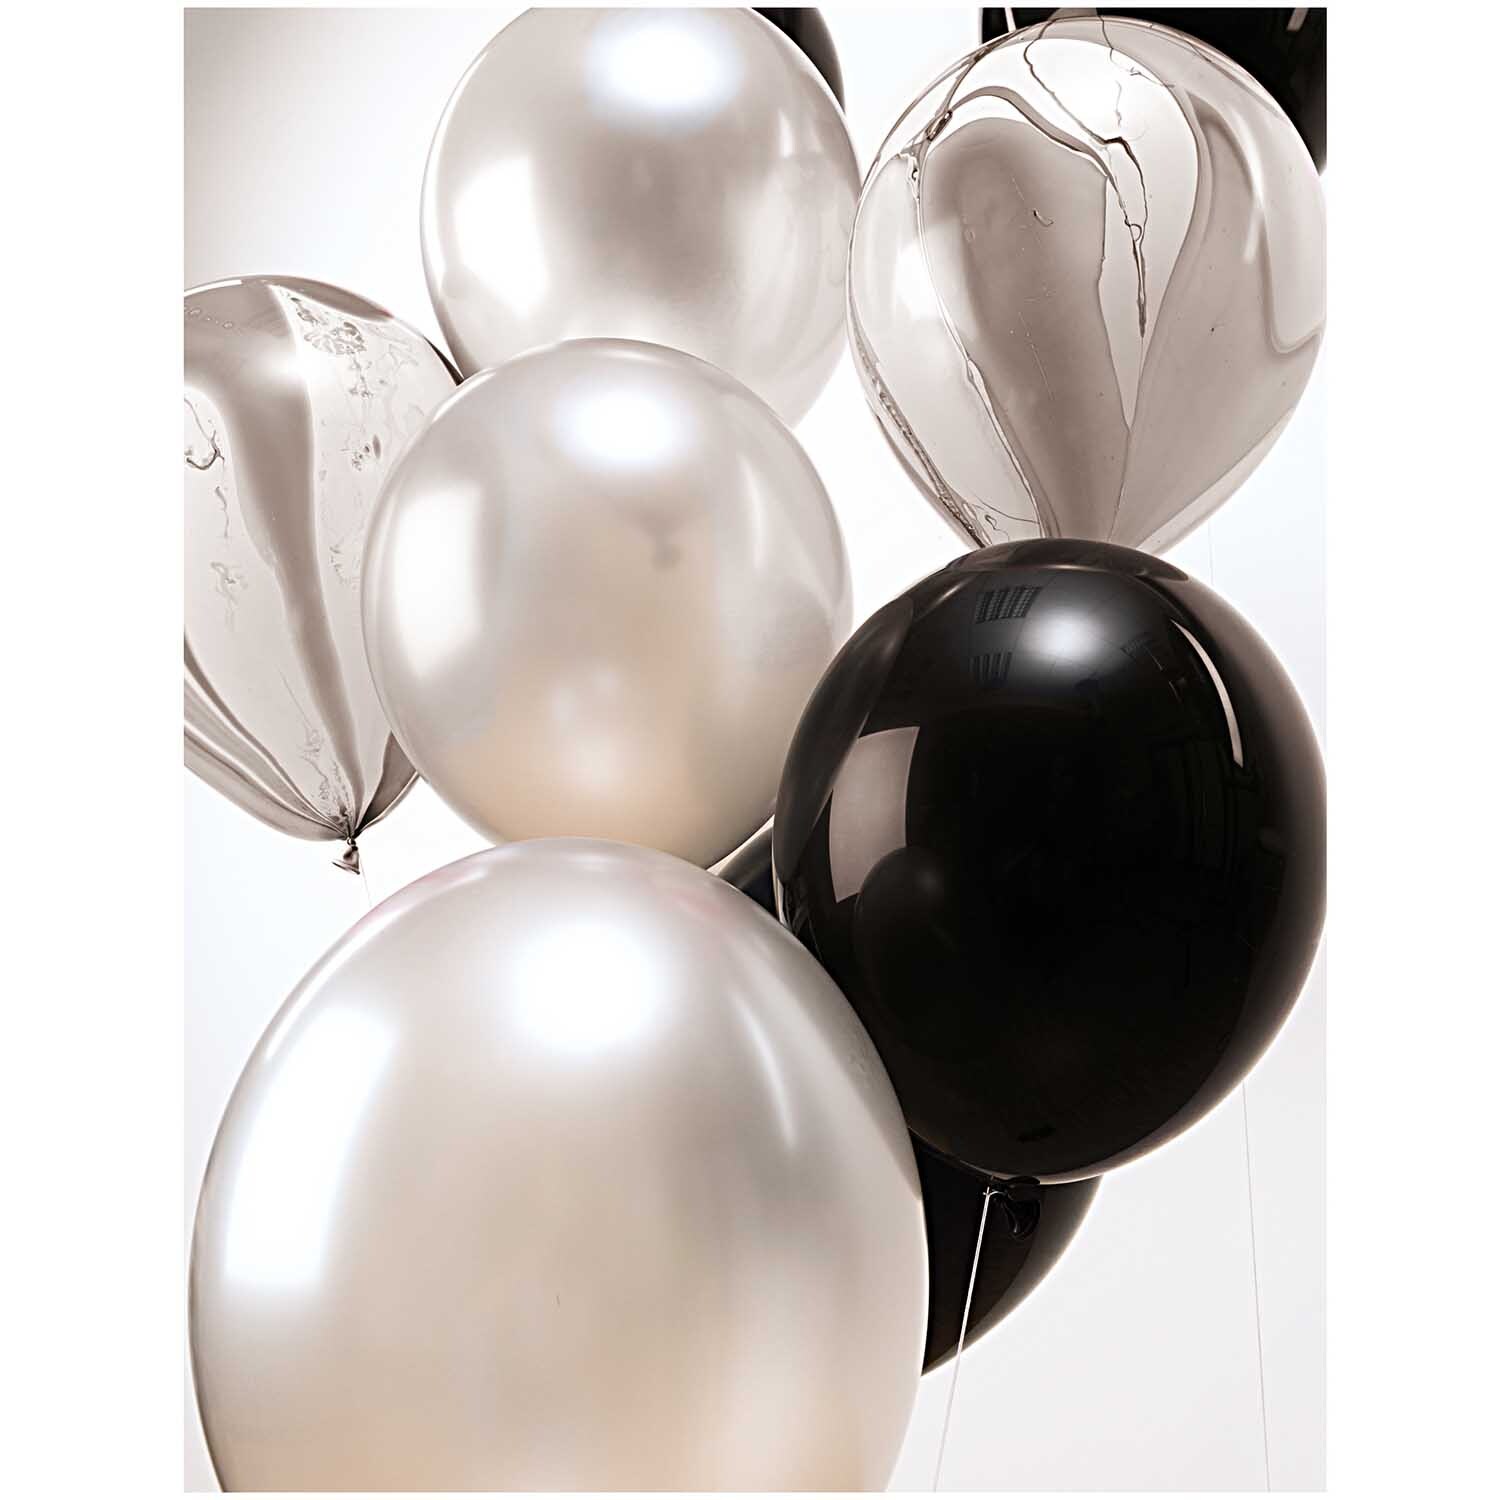 Luftballon Mix schwarz-weiß 30cm 12 Stück